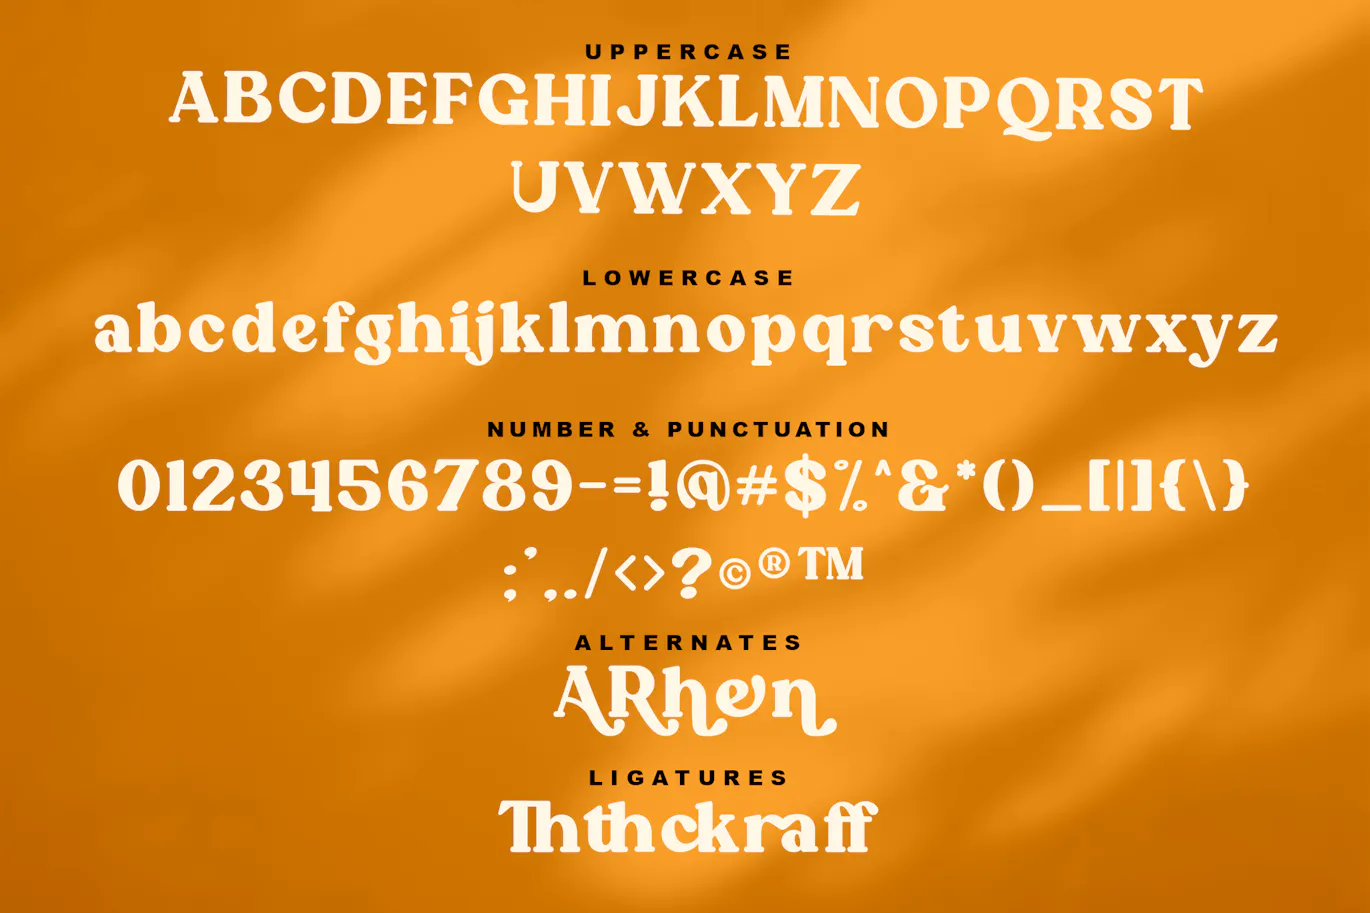 复古风格的英文粗体衬线字体 - Roffene - Retro Serif Style Font 设计字体 第6张